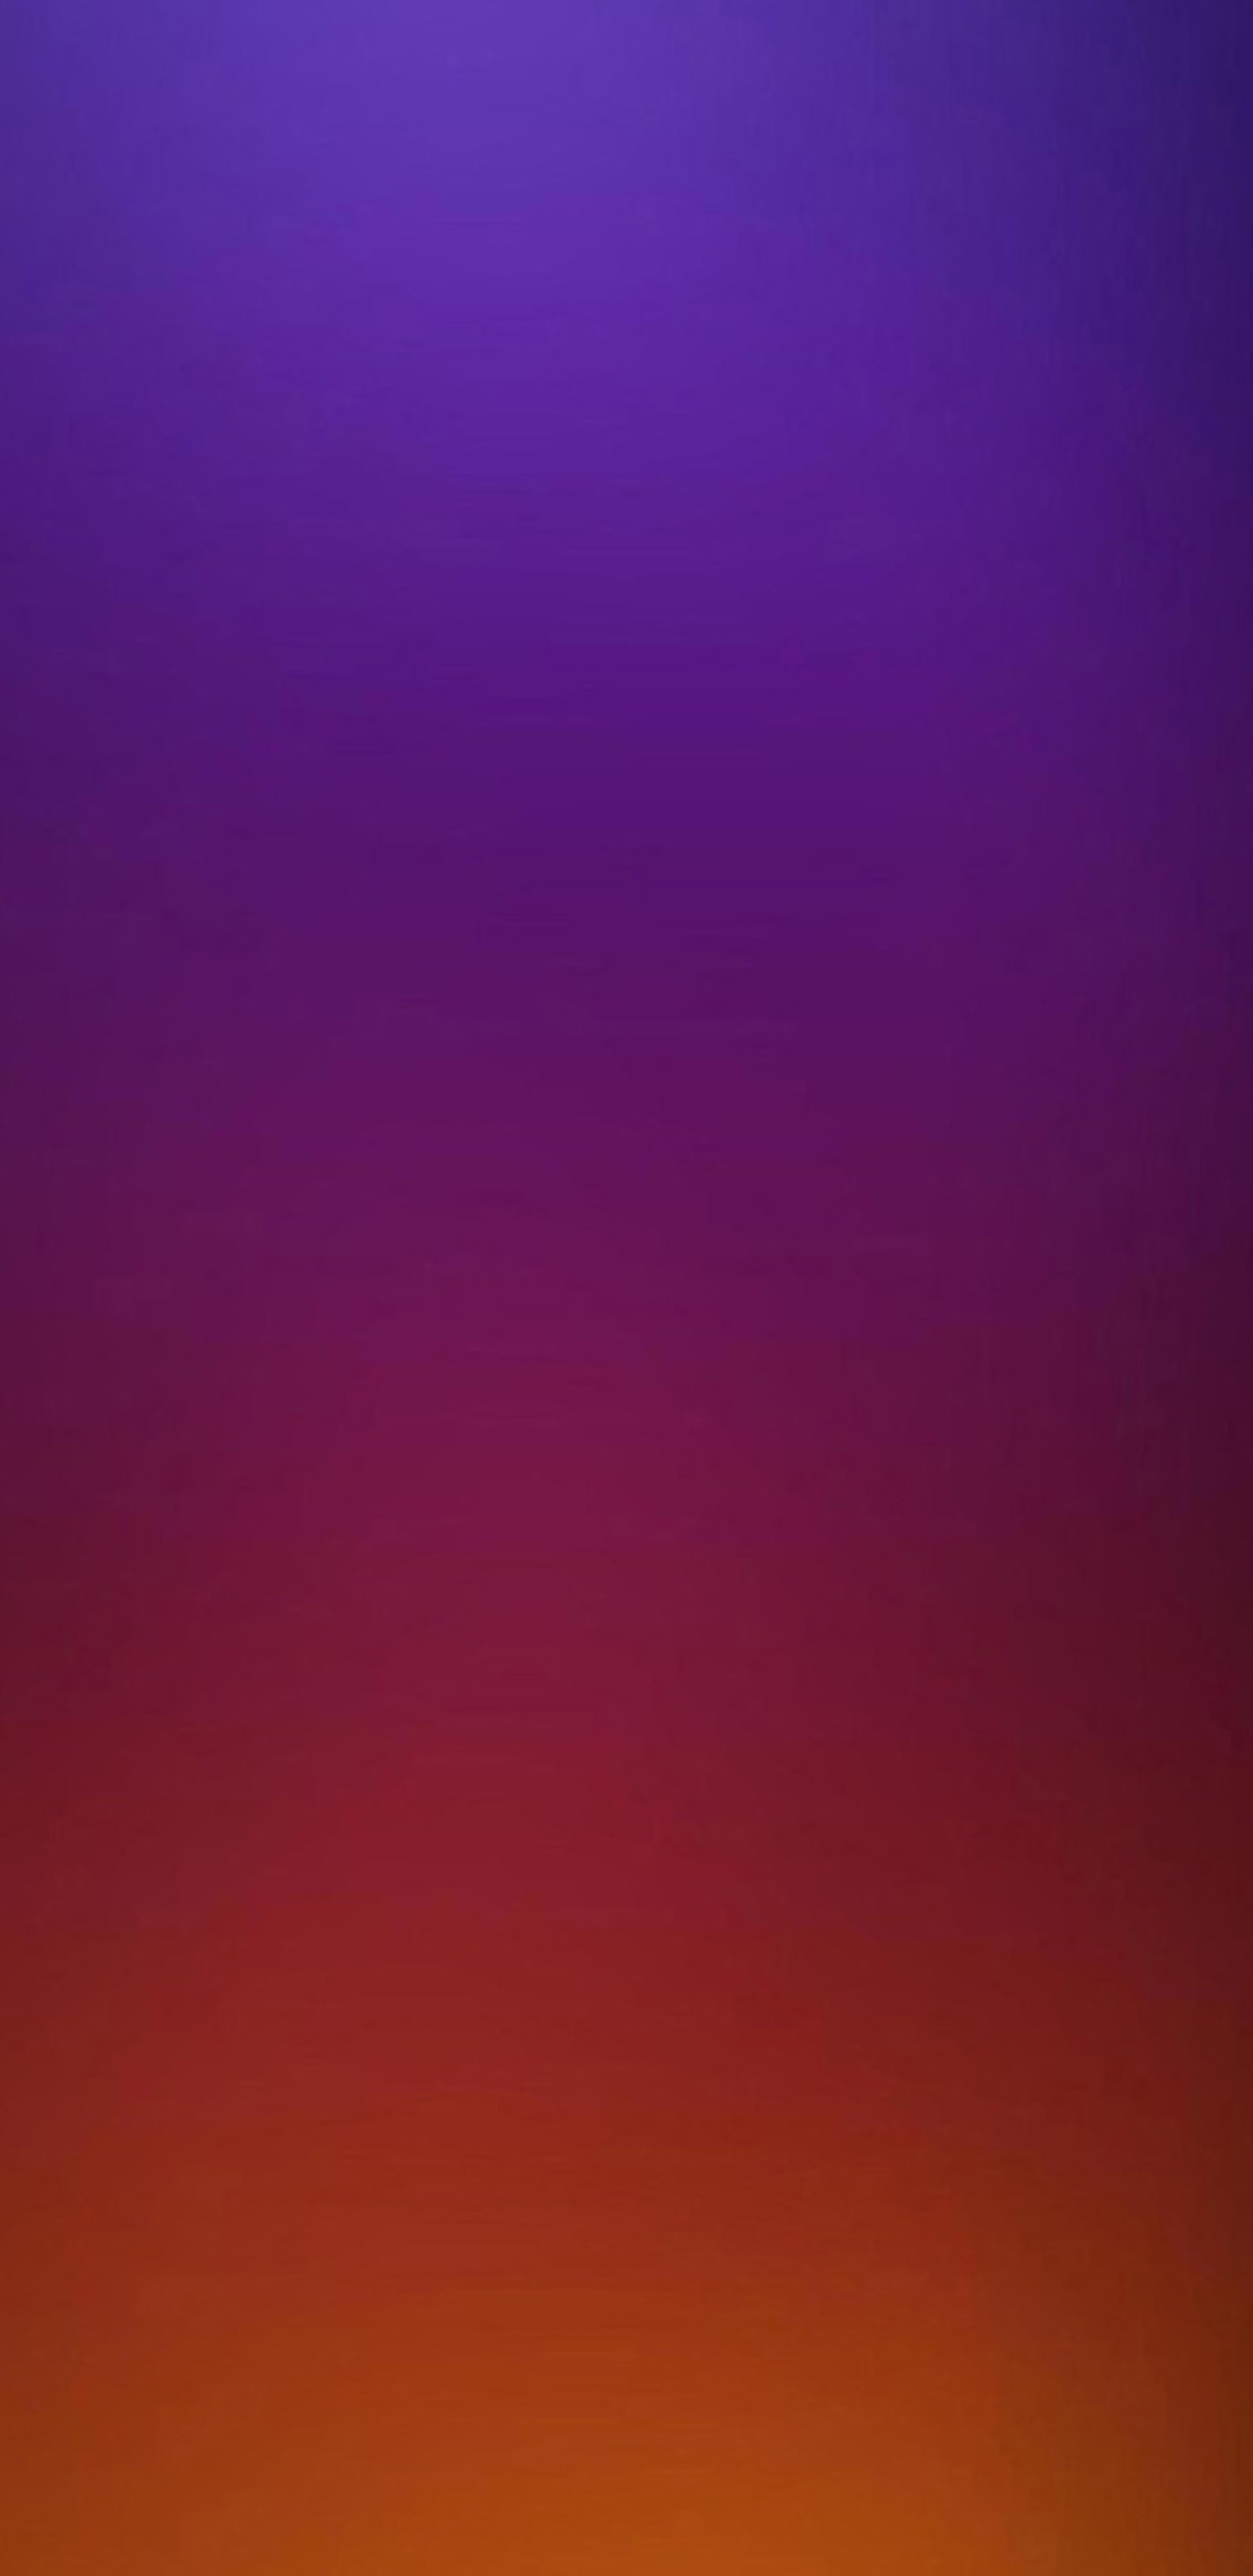 サムスンギャラクシーs8壁紙,空,バイオレット,紫の,青い,赤